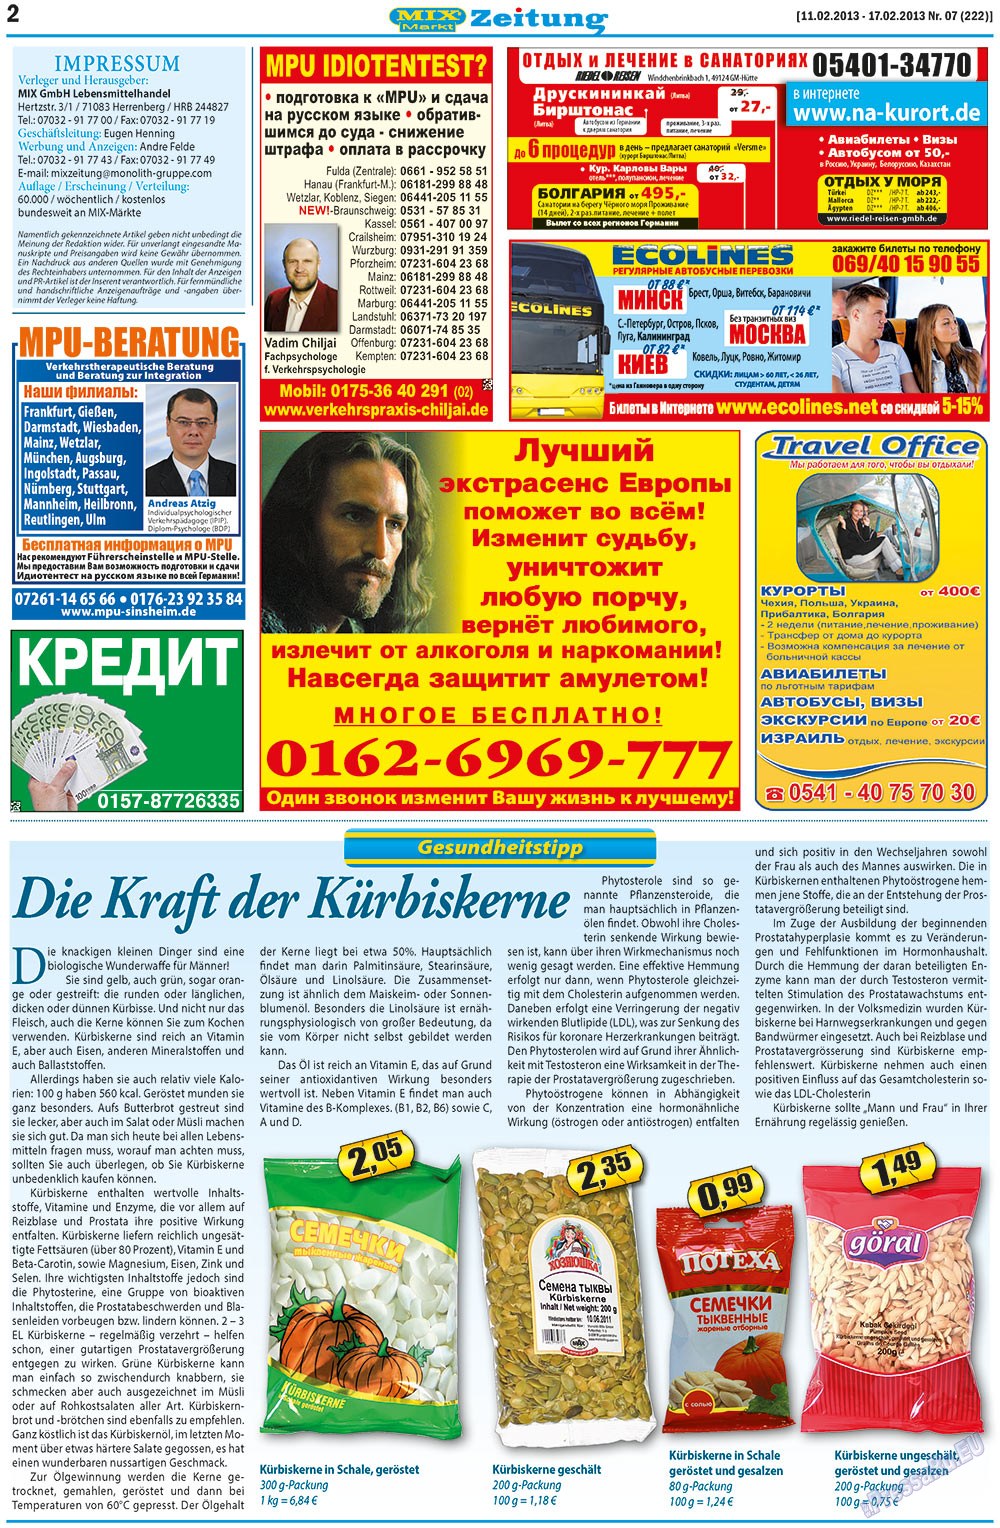 MIX-Markt Zeitung (газета). 2013 год, номер 7, стр. 2